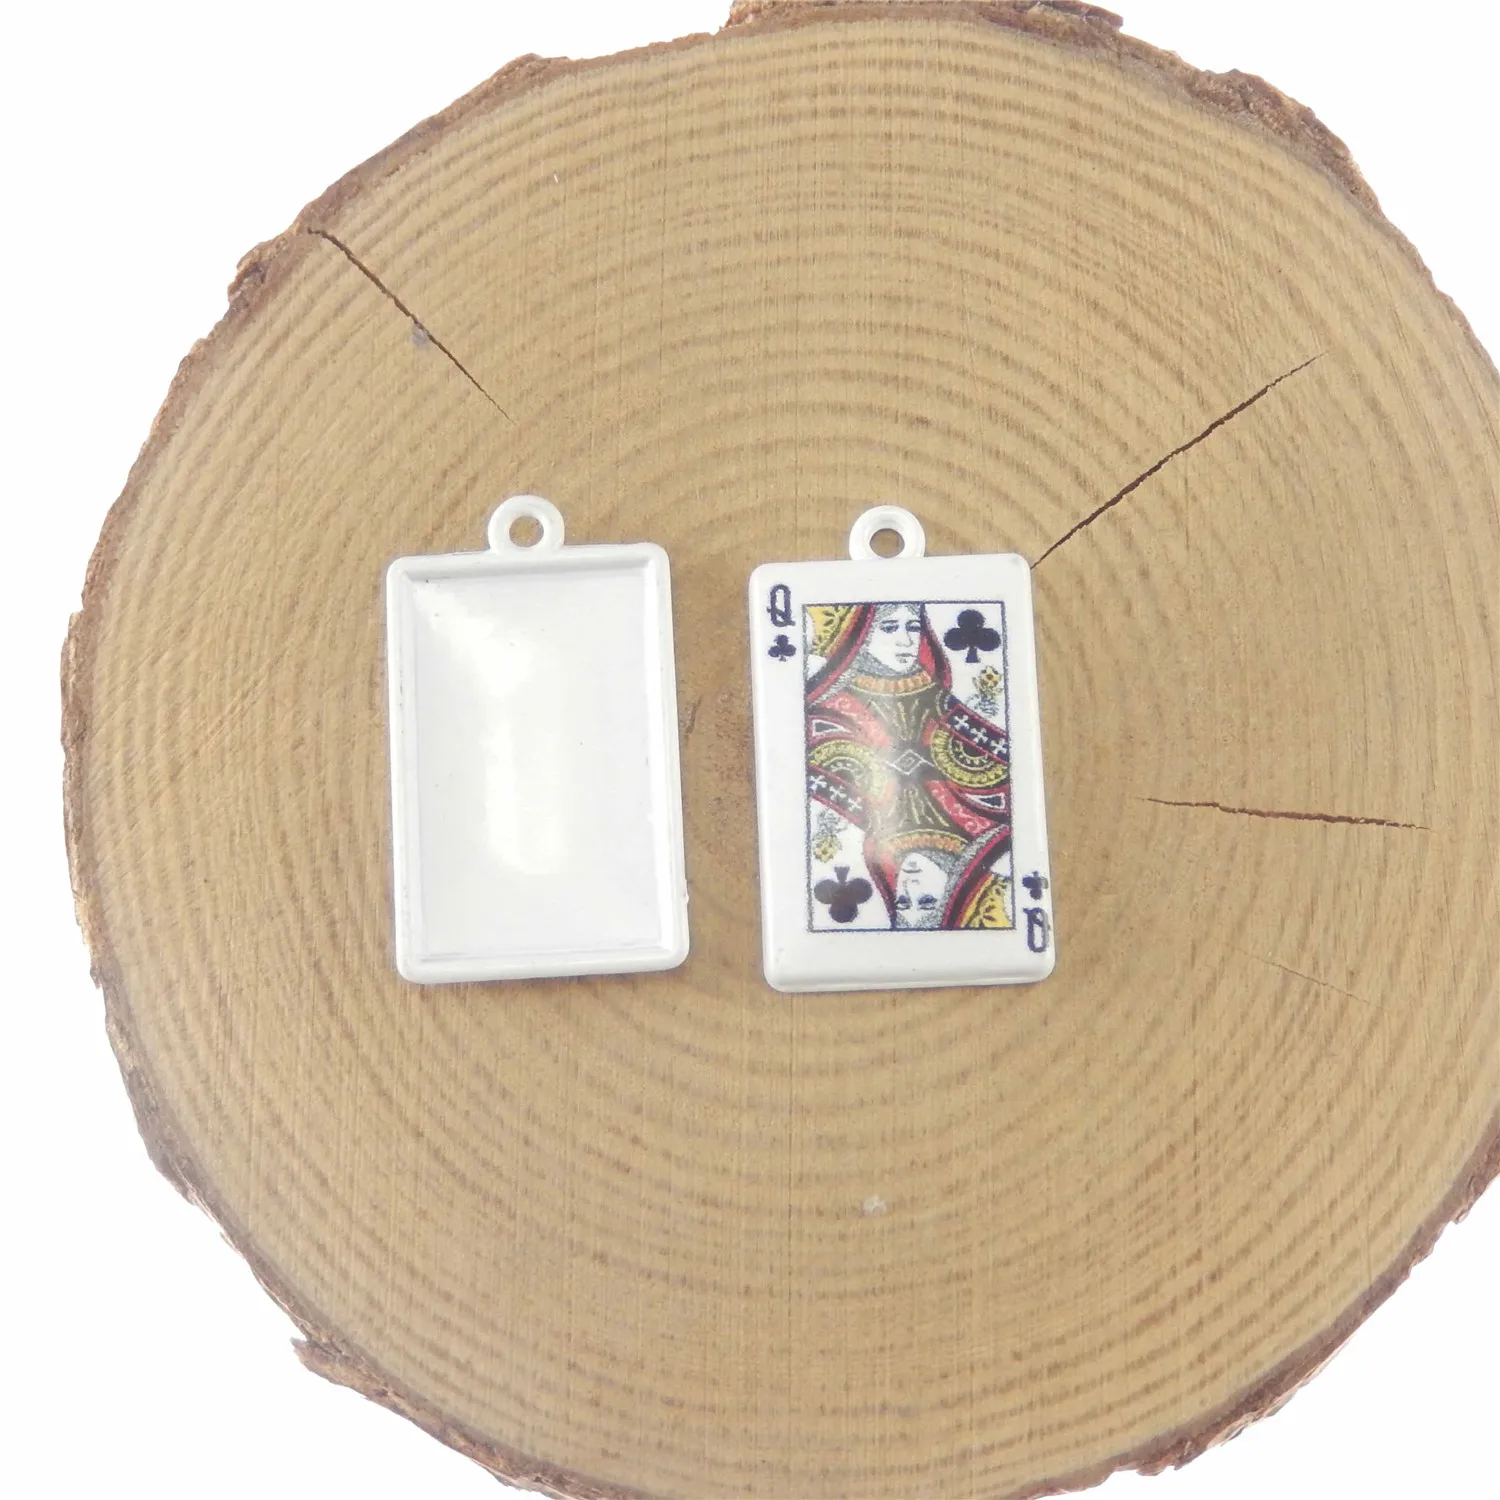 10 шт. подвеска-открытка King queen Poker, покрытая молочно-белым цинковым сплавом, маленький Шарм, DIY уникальные индивидуальные Подвески King queen Poker DIY